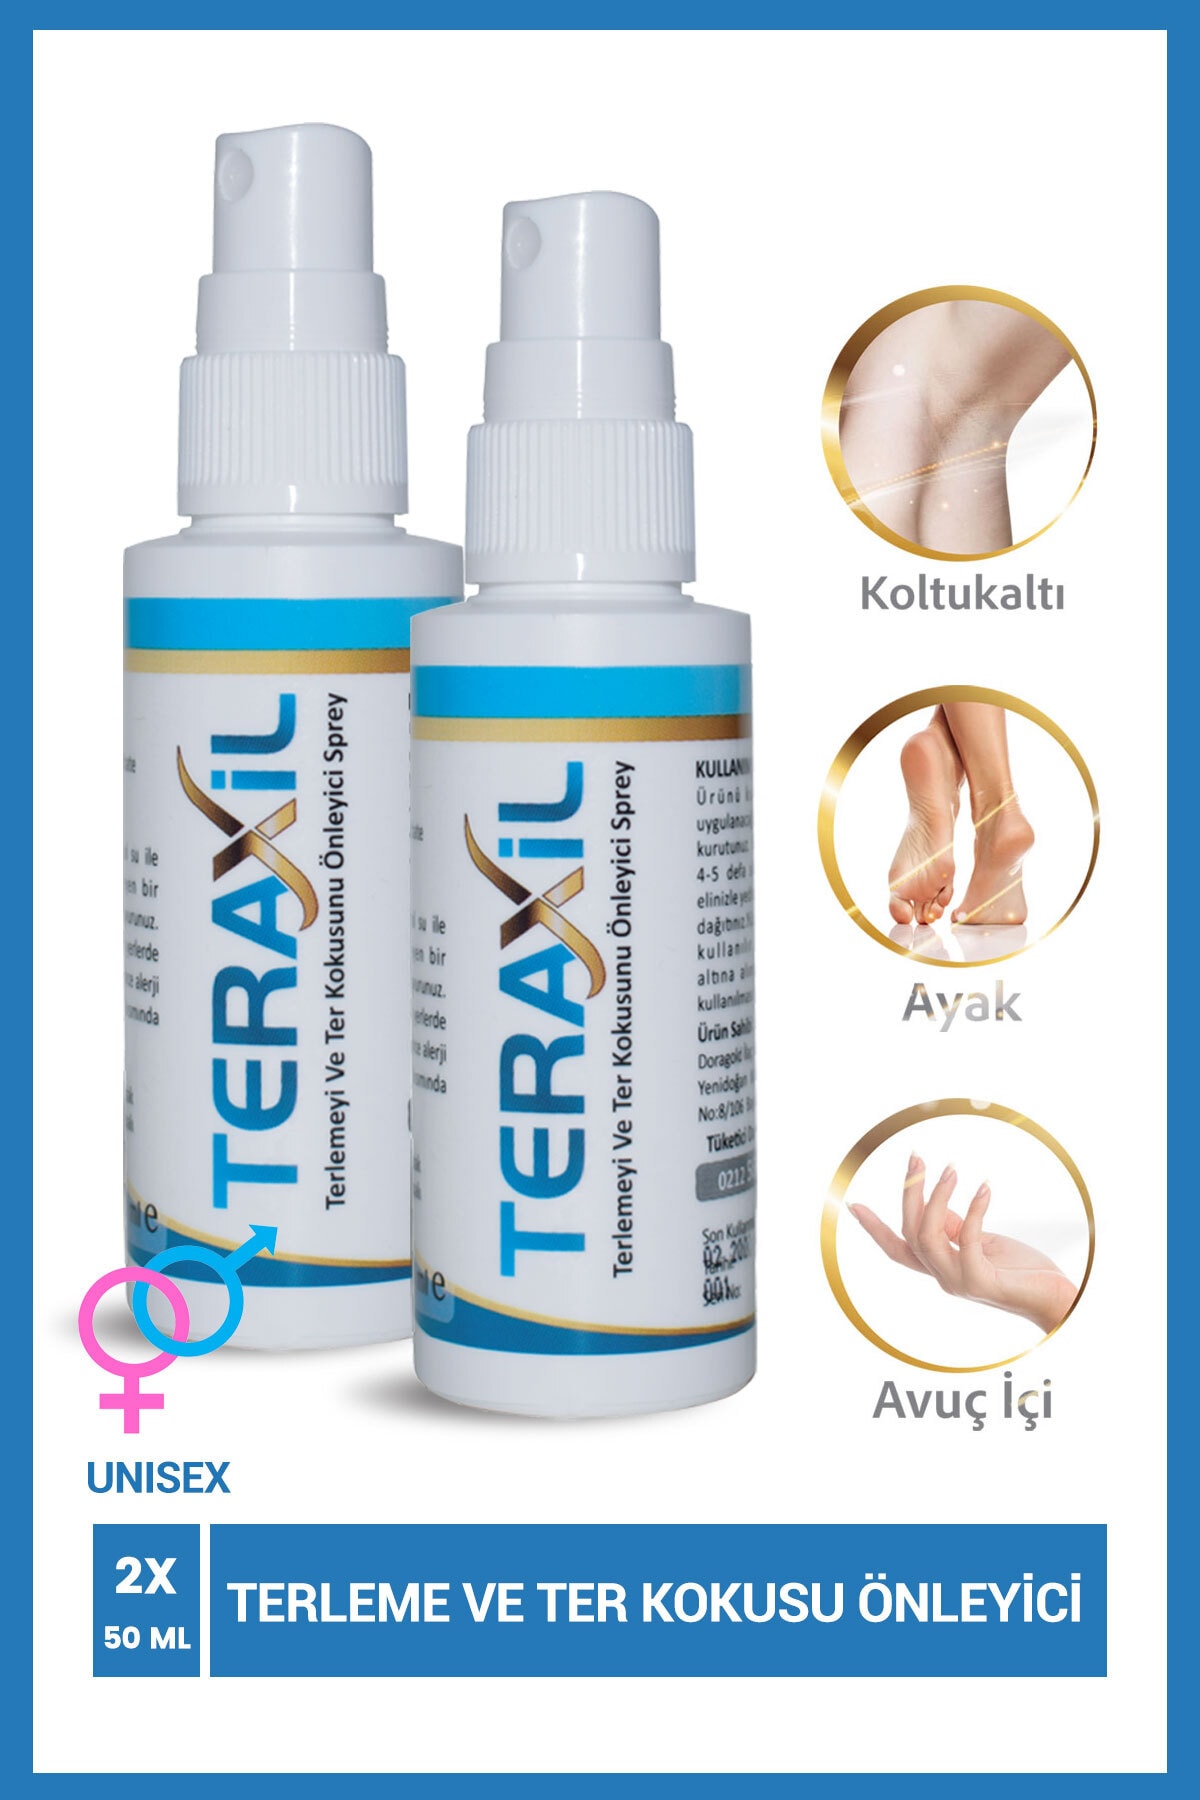 Teraxil El, Ayak, Koltuk Altı Terleme Ve Ter Kokusu Önleyici Sprey Deodorant Antiperspirant Unisex 2 Adet